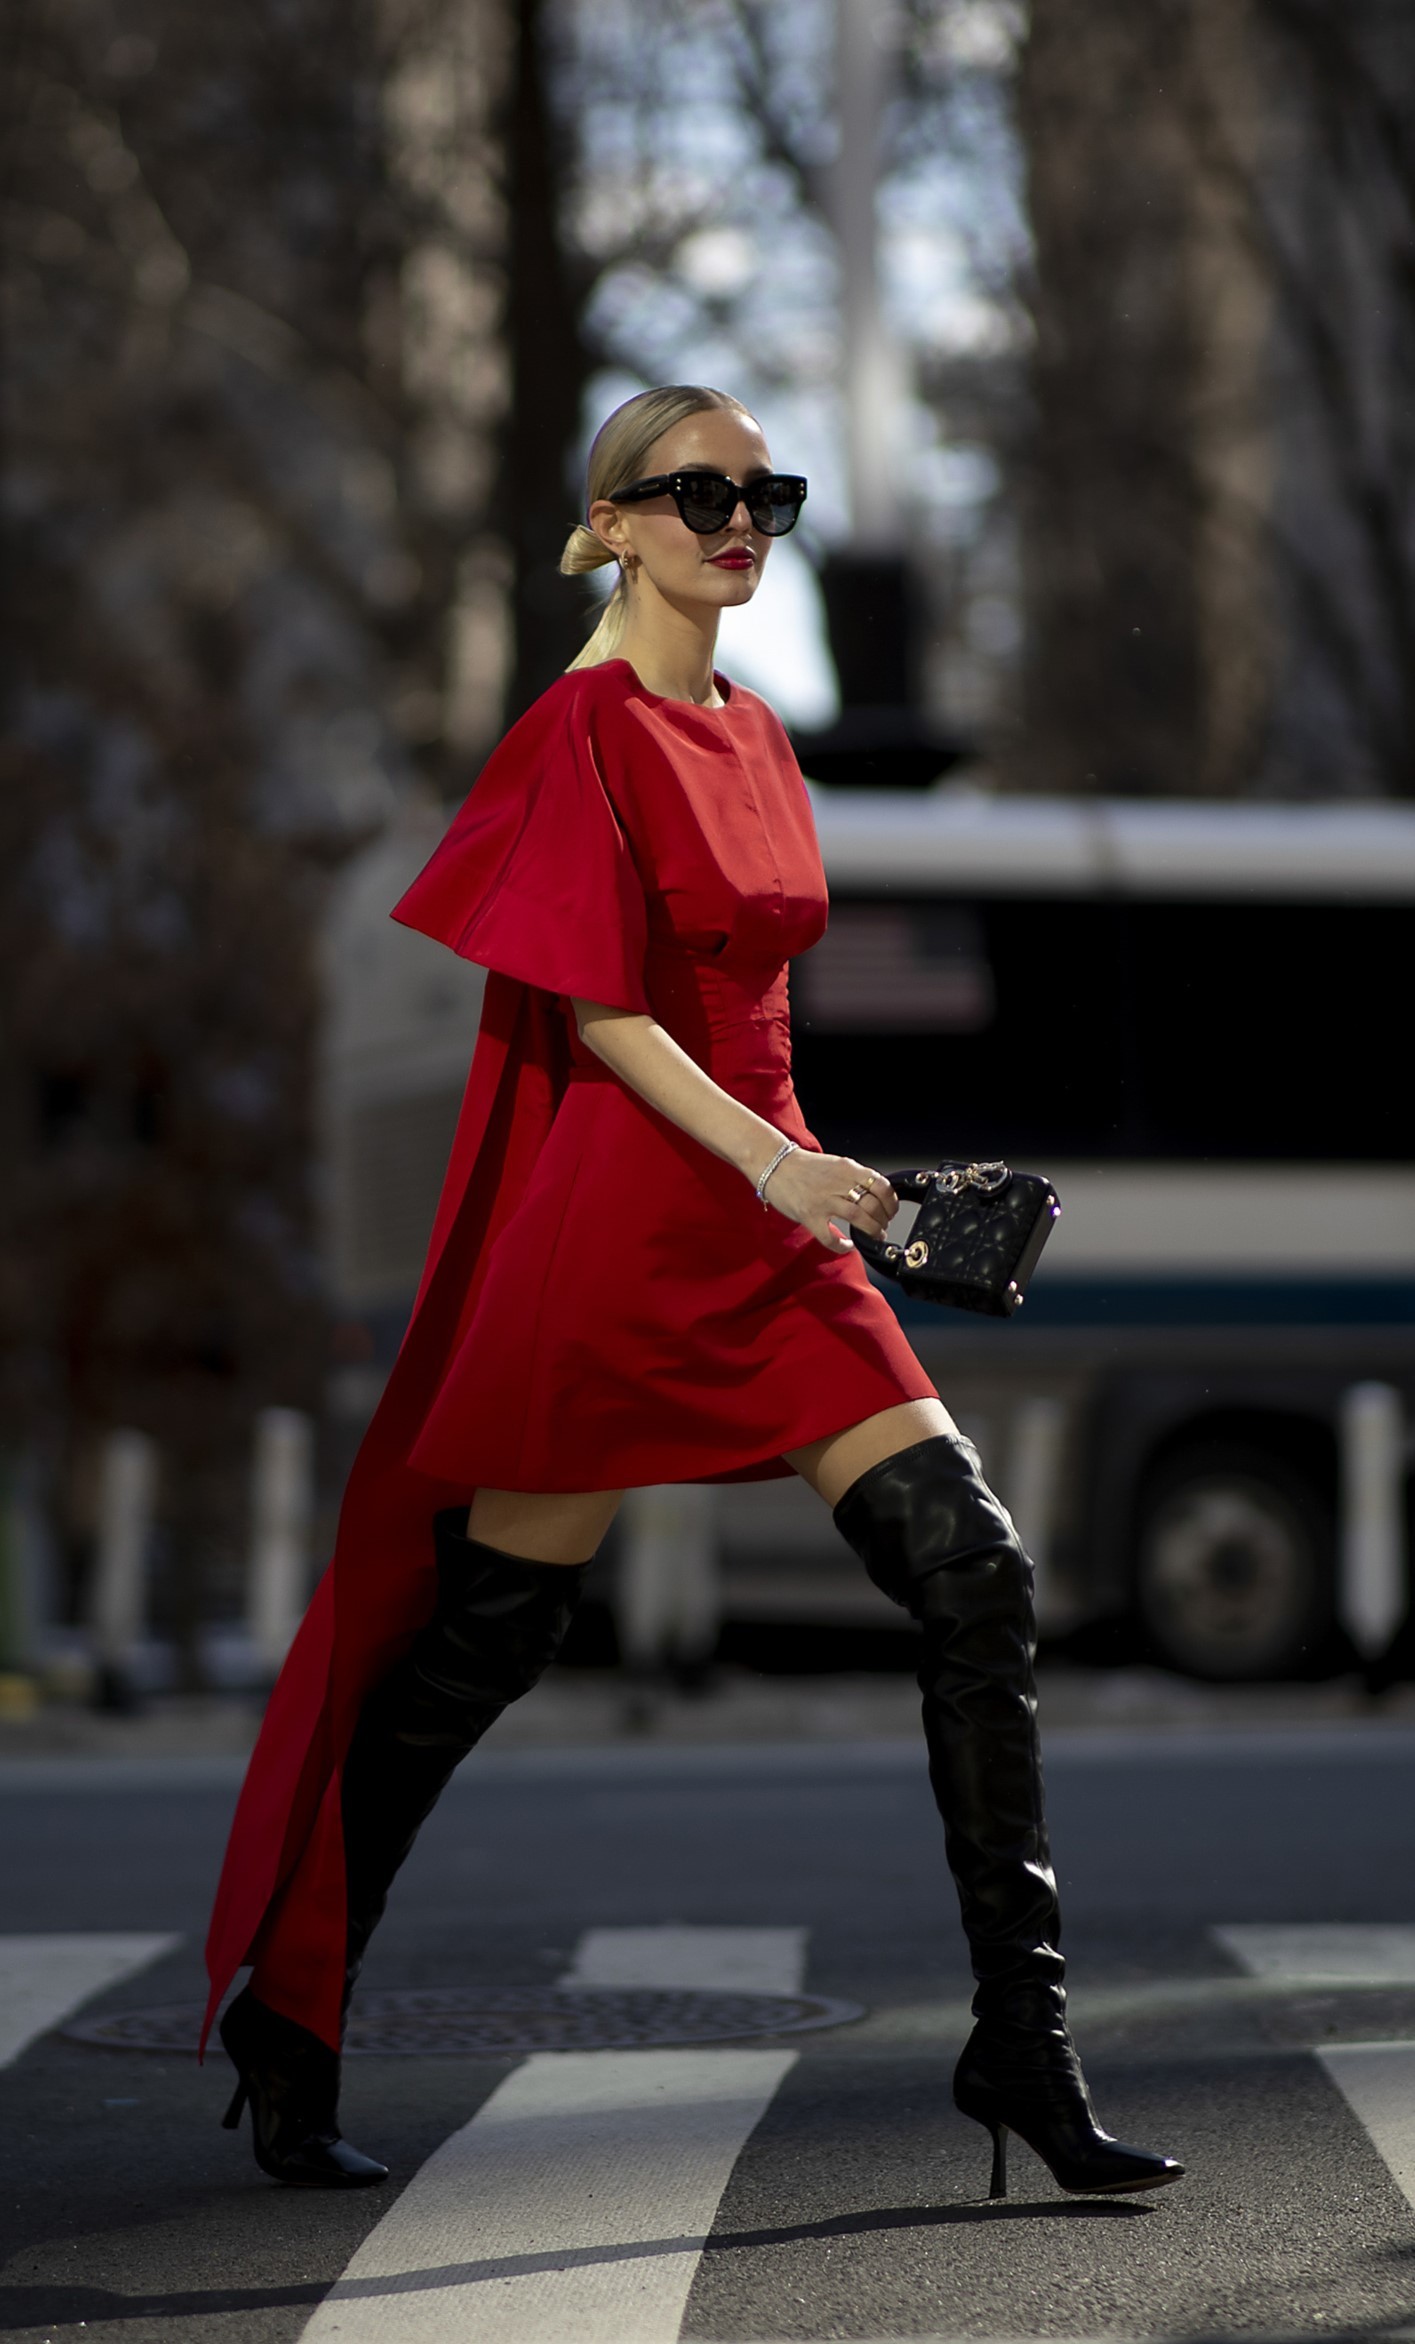 Vestido rojo corto con lazada a modo de cola y botas mosqueteras.